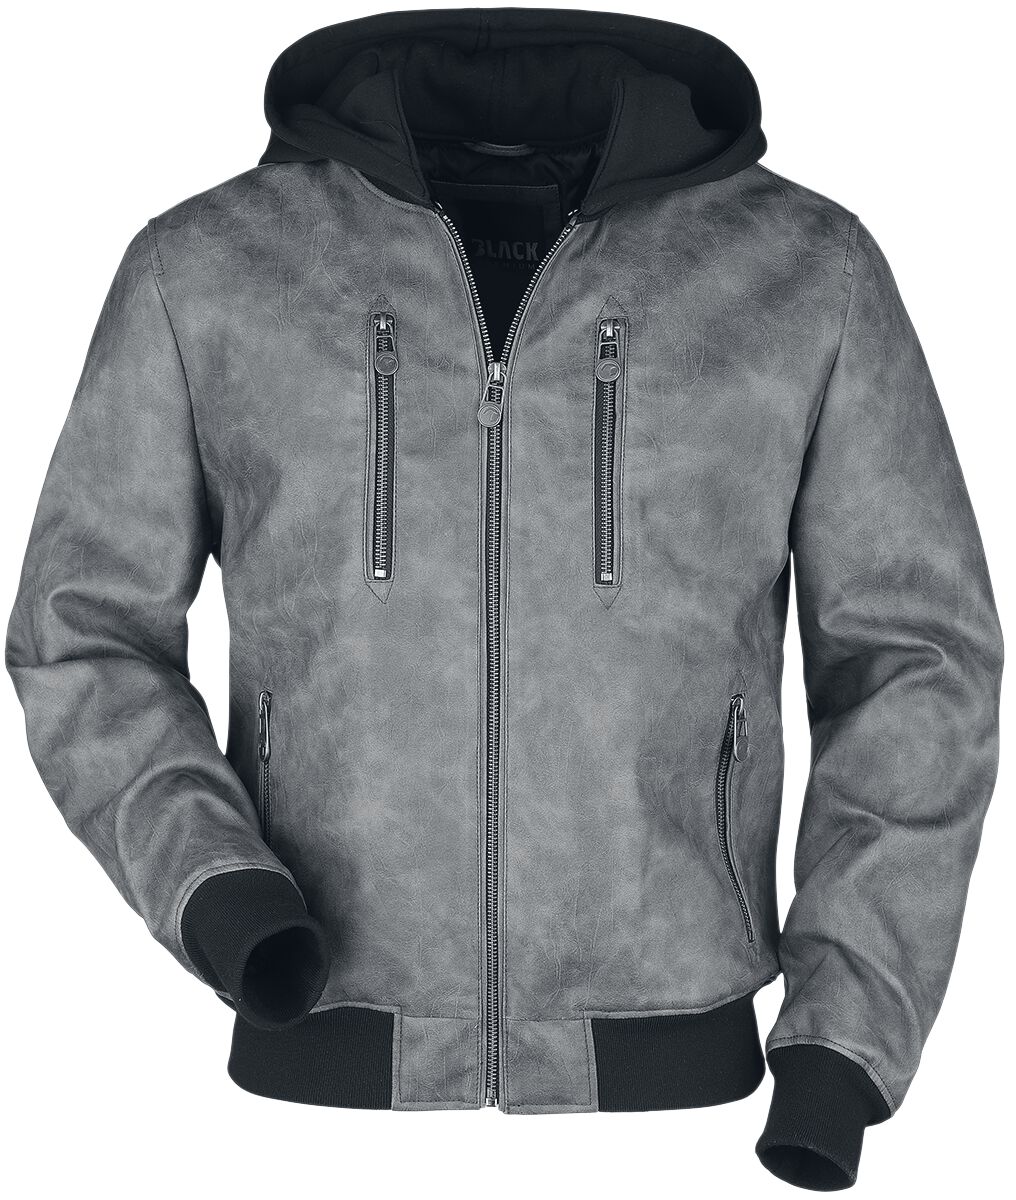 Image of Giacca di mezza stagione di Black Premium by EMP - Grey faux-leather jacket - M a XXL - Uomo - grigio/nero